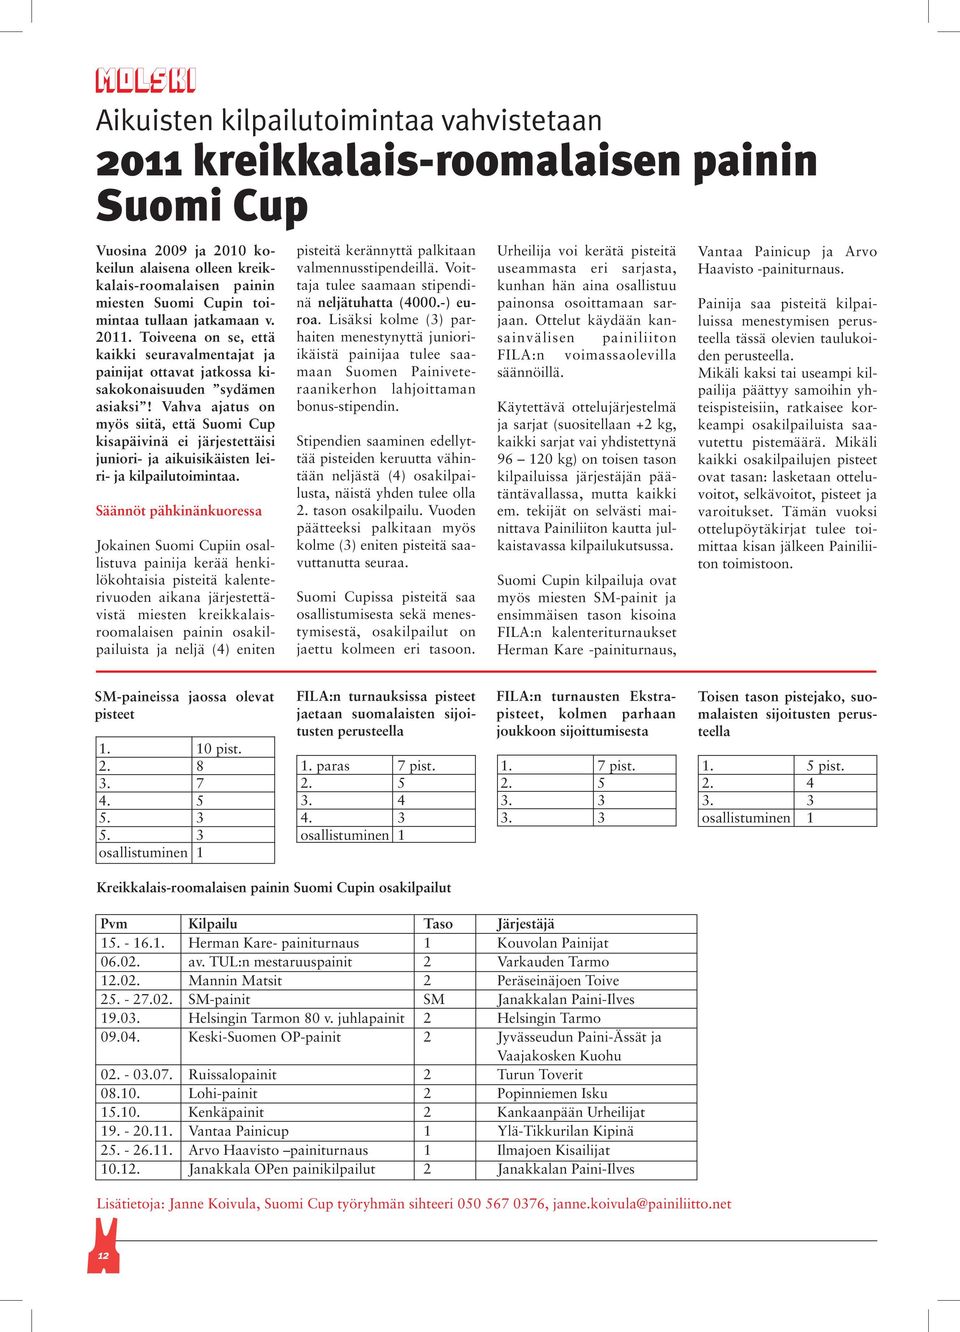 Vahva ajatus on myös siitä, että Suomi Cup kisapäivinä ei järjestettäisi juniori- ja aikuisikäisten leiri- ja kilpailutoimintaa.